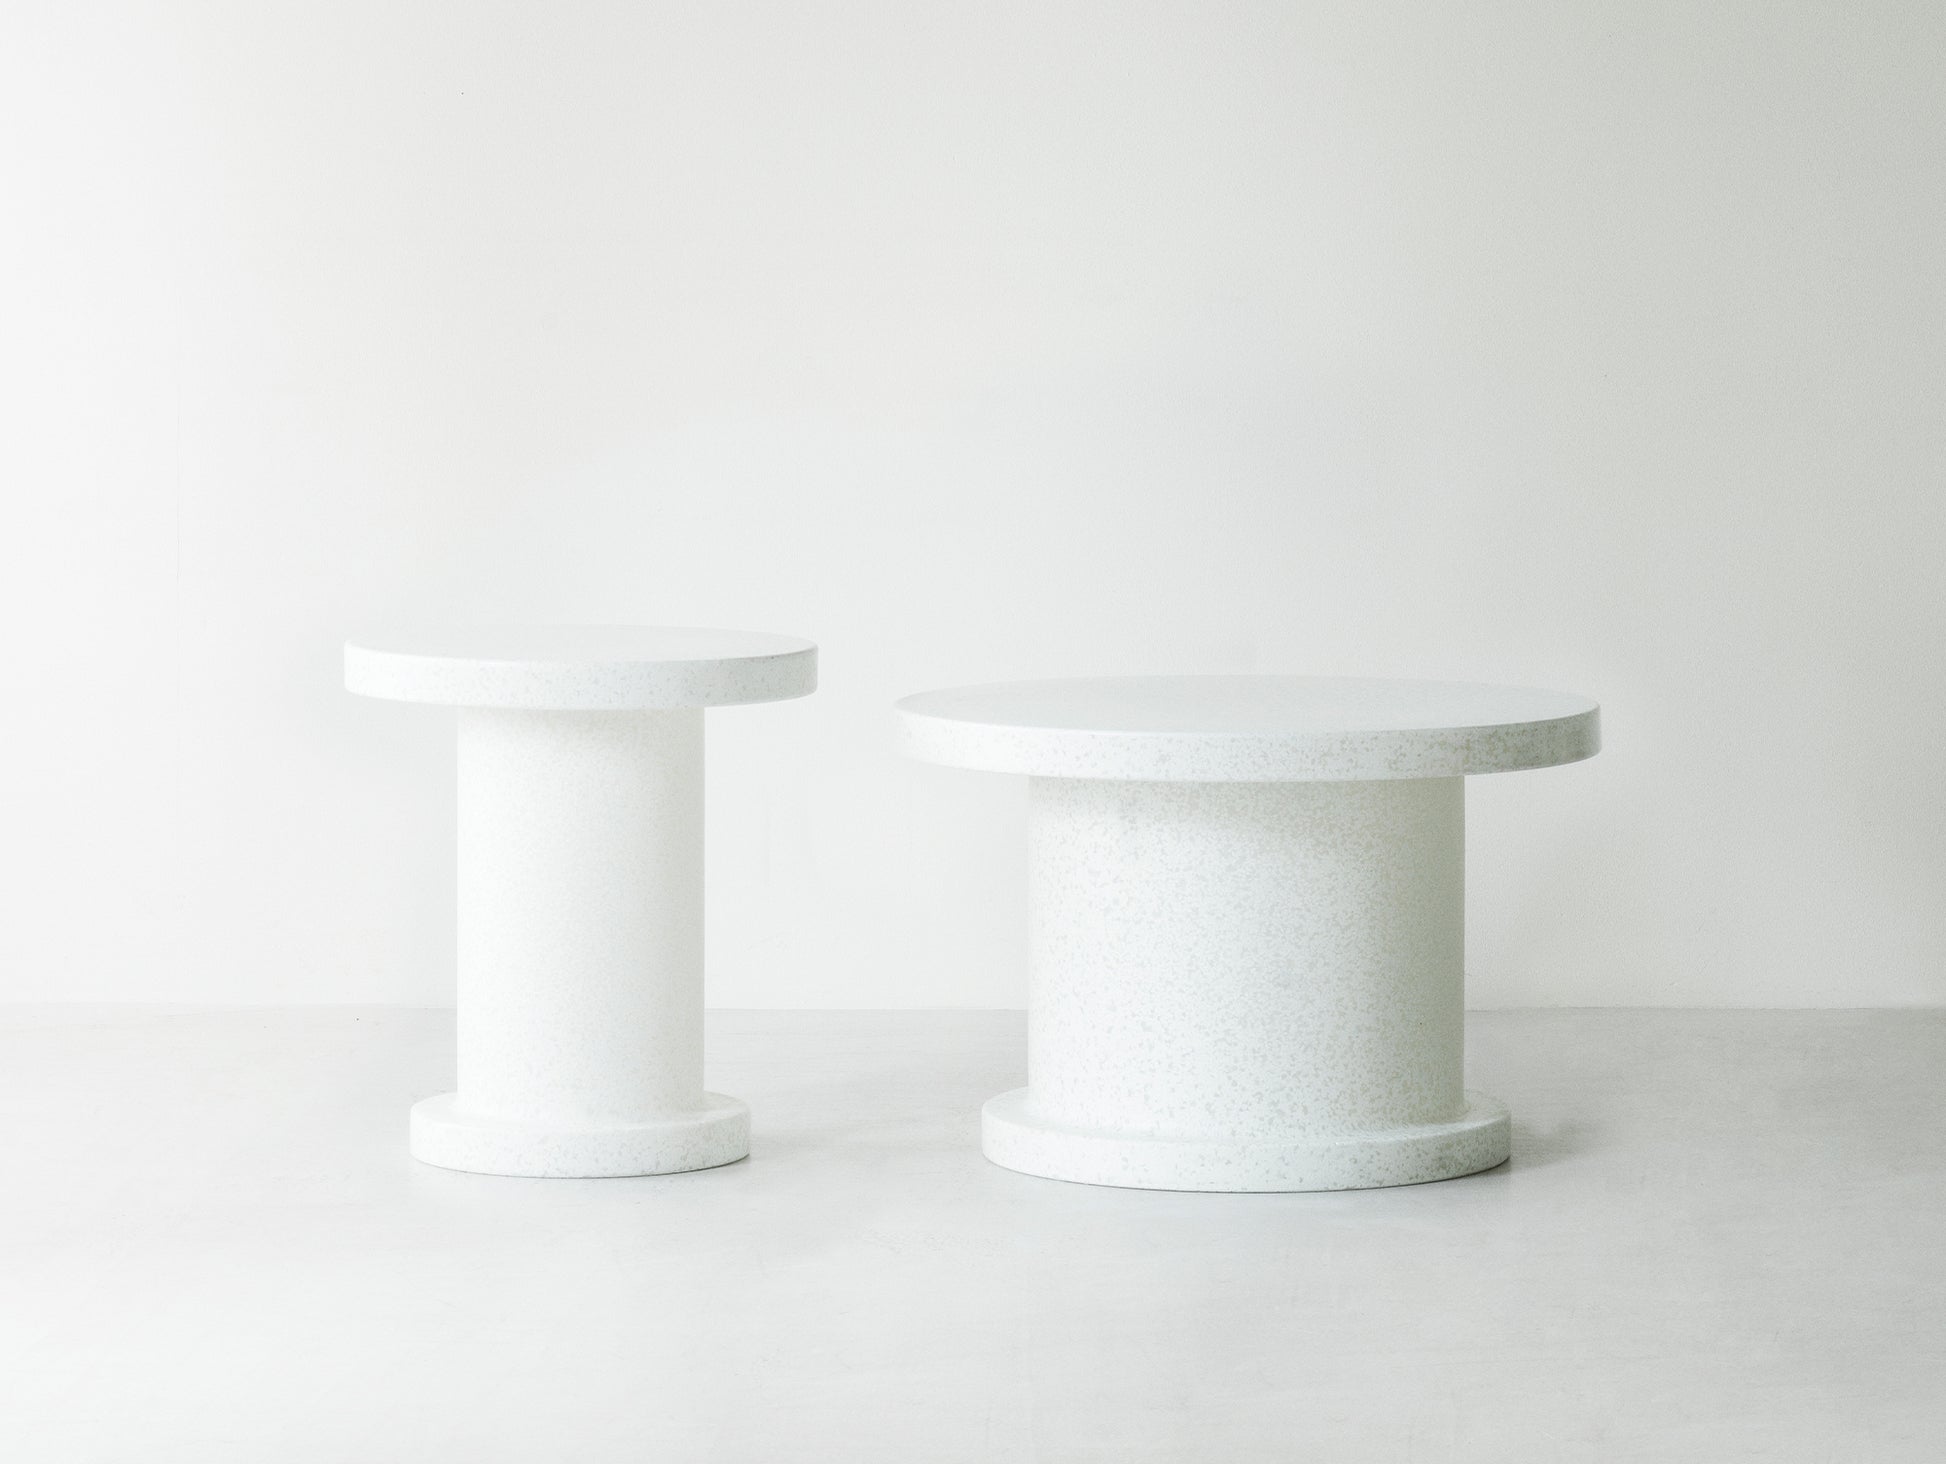 Bit Side Table by Normann Copenhagen - White